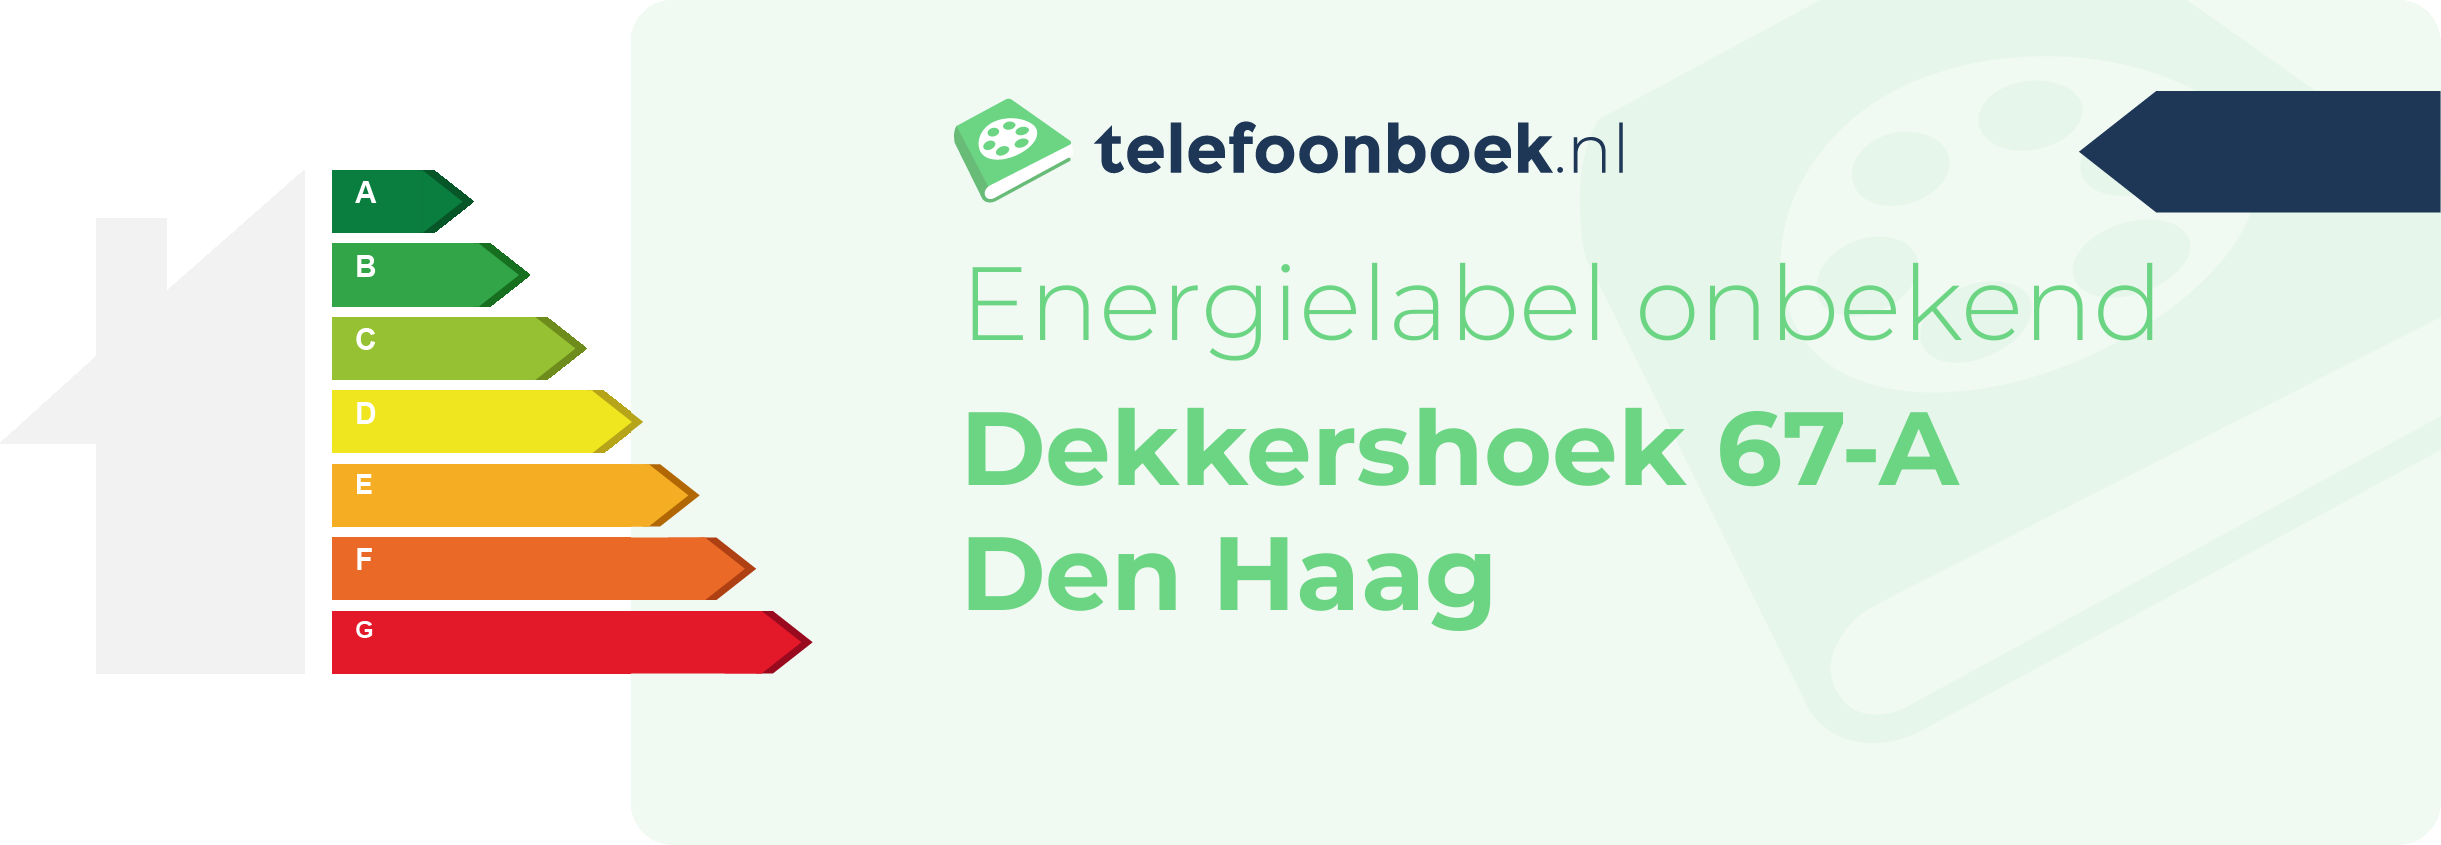 Energielabel Dekkershoek 67-A Den Haag